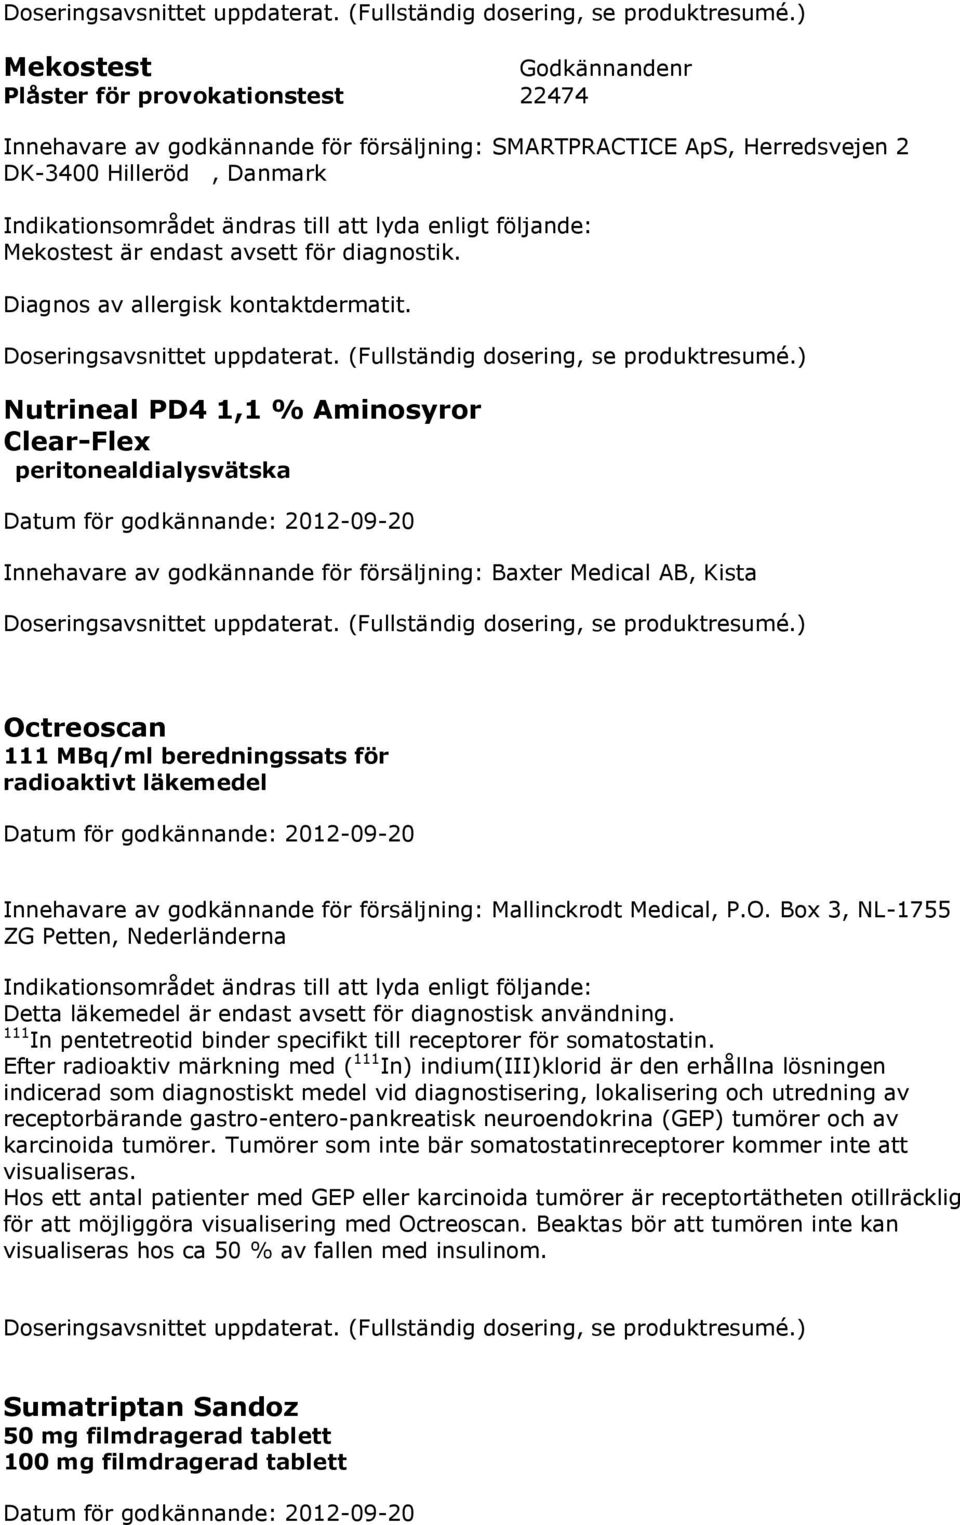 Nutrineal PD4 1,1 % Aminosyror Clear-Flex peritonealdialysvätska Innehavare av godkännande för försäljning: Baxter Medical AB, Kista Octreoscan 111 MBq/ml beredningssats för radioaktivt läkemedel